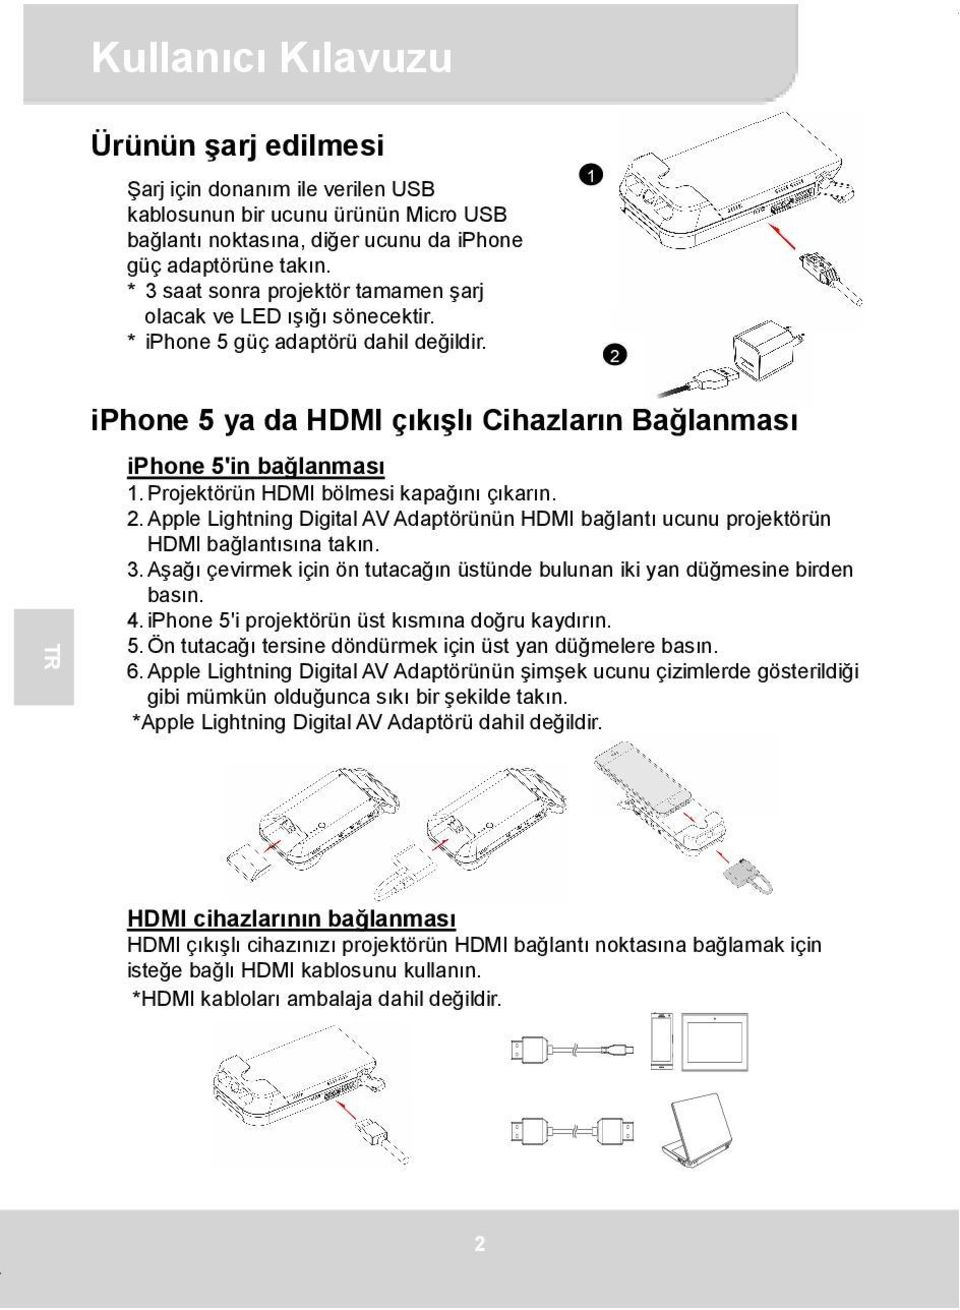 Projektörün HDMI bölmesi kapağını çıkarın. 2. Apple Lightning Digital AV Adaptörünün HDMI bağlantı ucunu projektörün HDMI bağlantısına takın. 3.